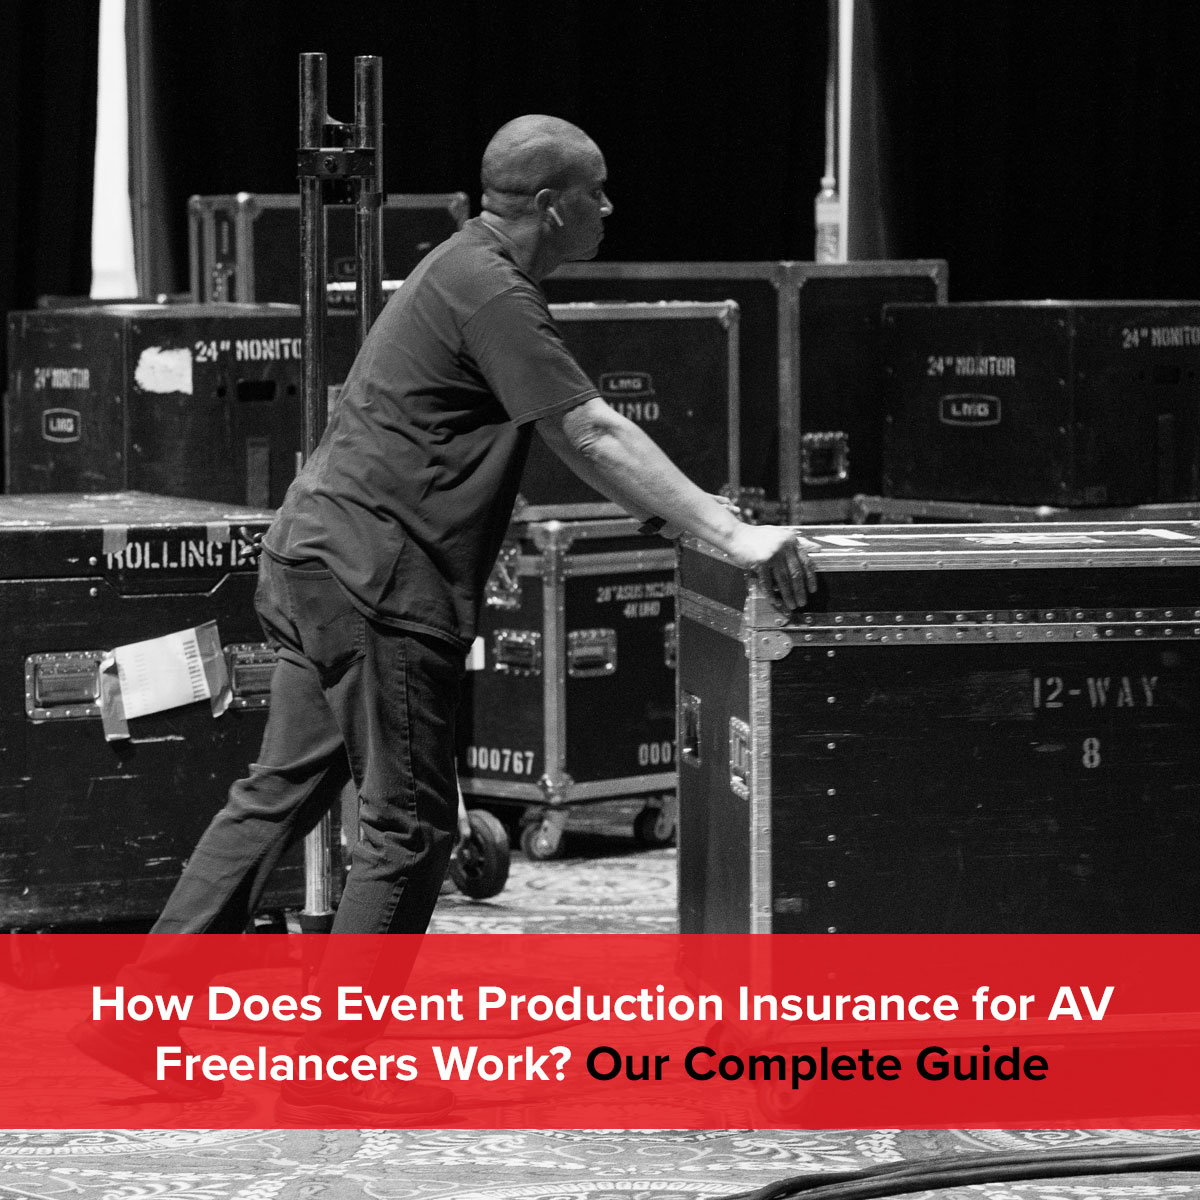 How does event production insurance for AV freelancers work?